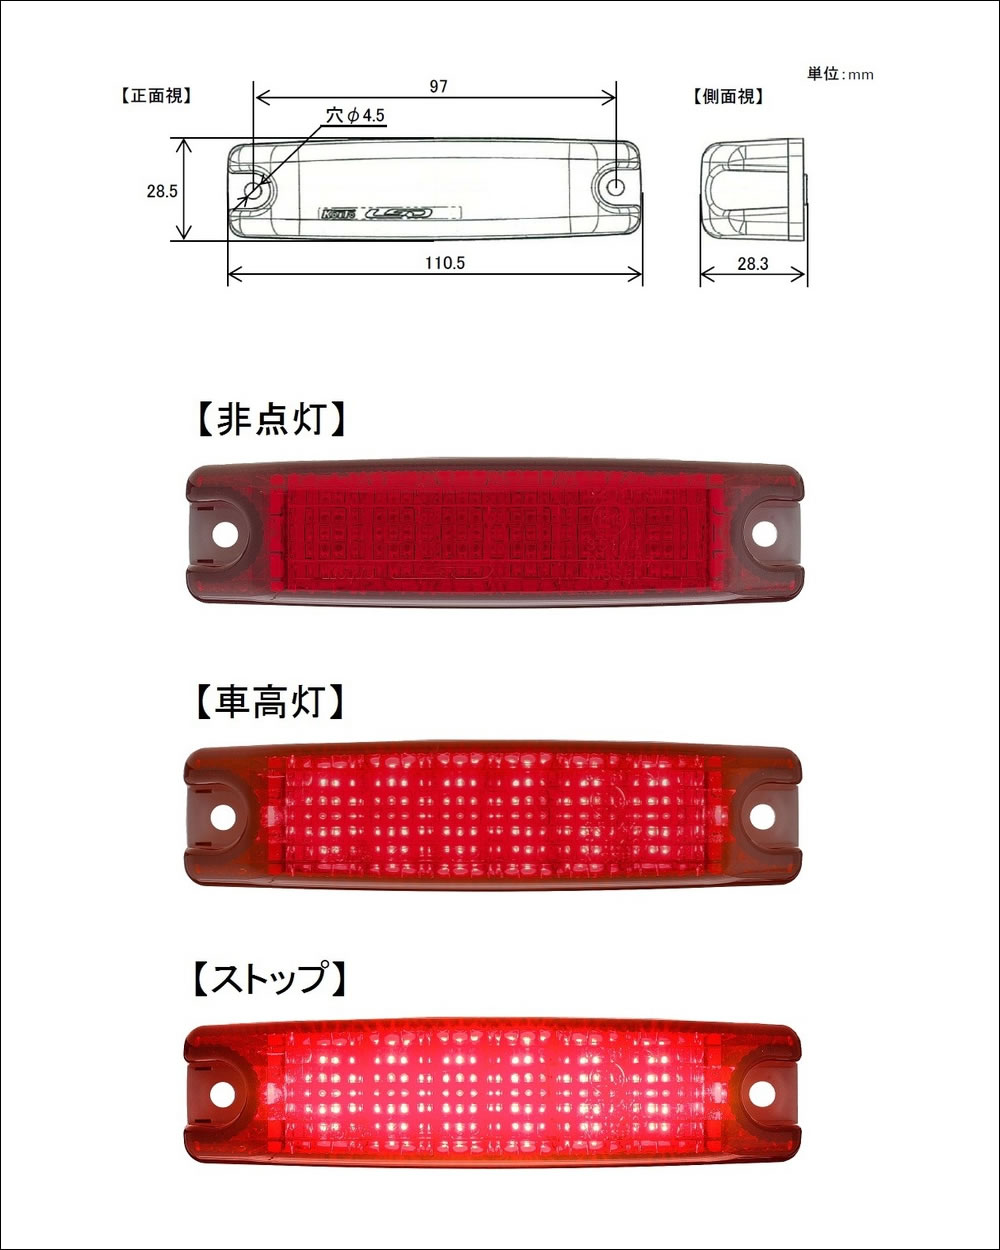 LED-STOPLM-M. LED車高灯 & ストップランプミニ